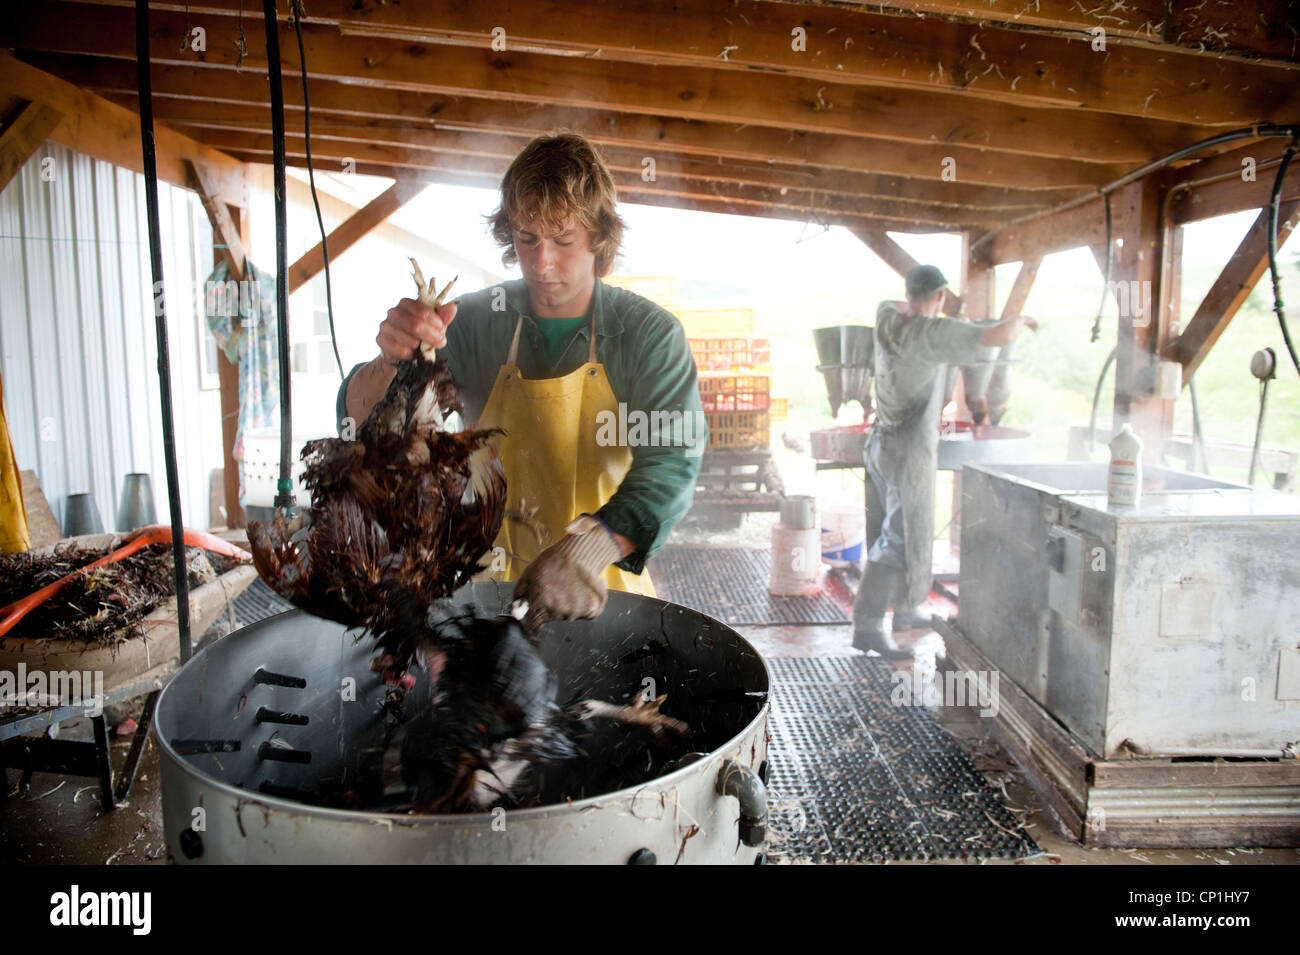 Grupo de limpieza y preparación de pollos sacrificados en una granja avícola Foto de stock